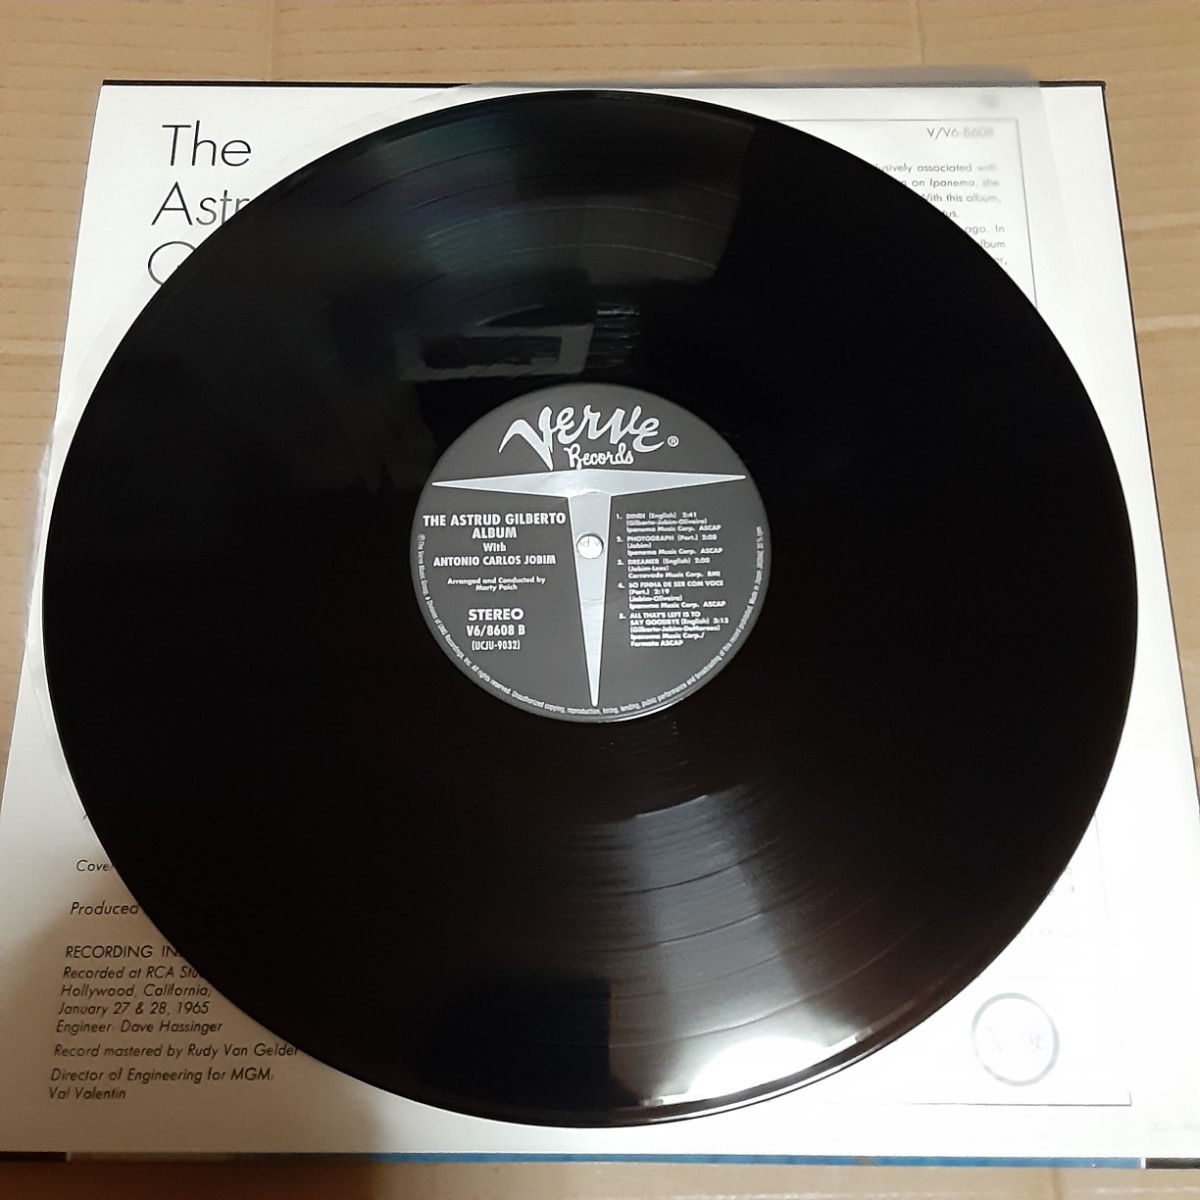 限定盤 JAZZ THE BEST 国内 重量盤アストラッド・ジルベルト おいしい水 The Astrud Gilberto Album UCJU-9032の画像3